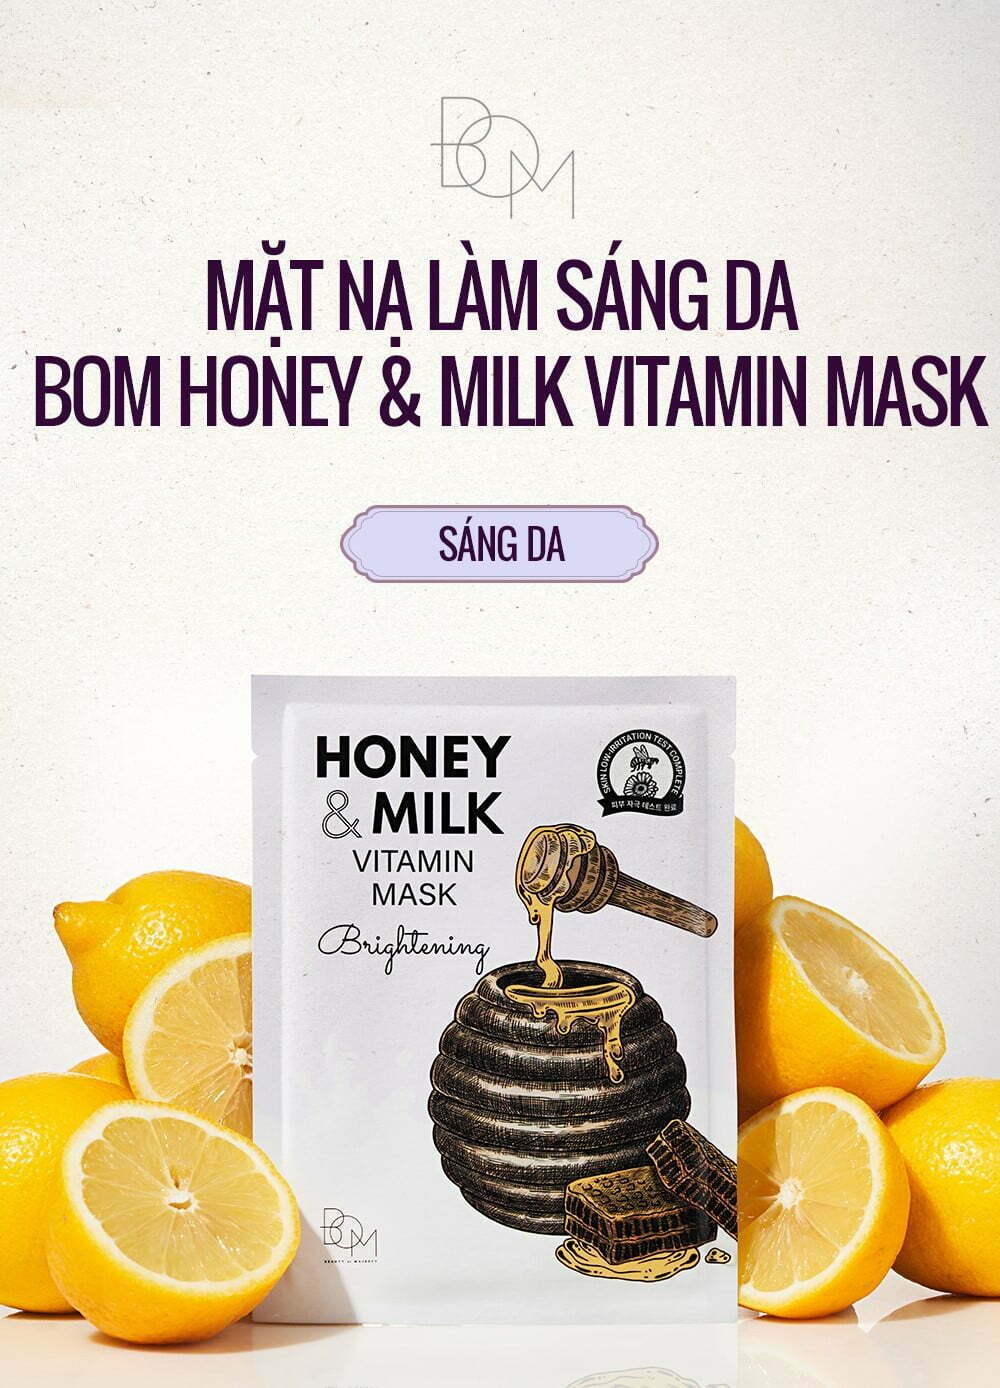 Mặt Nạ Dưỡng Sáng Da B.O.M Brightening Honey & Milk Brightening Vitamin Mask là sản phẩm mặt nạ giấy cao cấp của thương hiệu mỹ phẩm B.O.M Hàn Quốc.